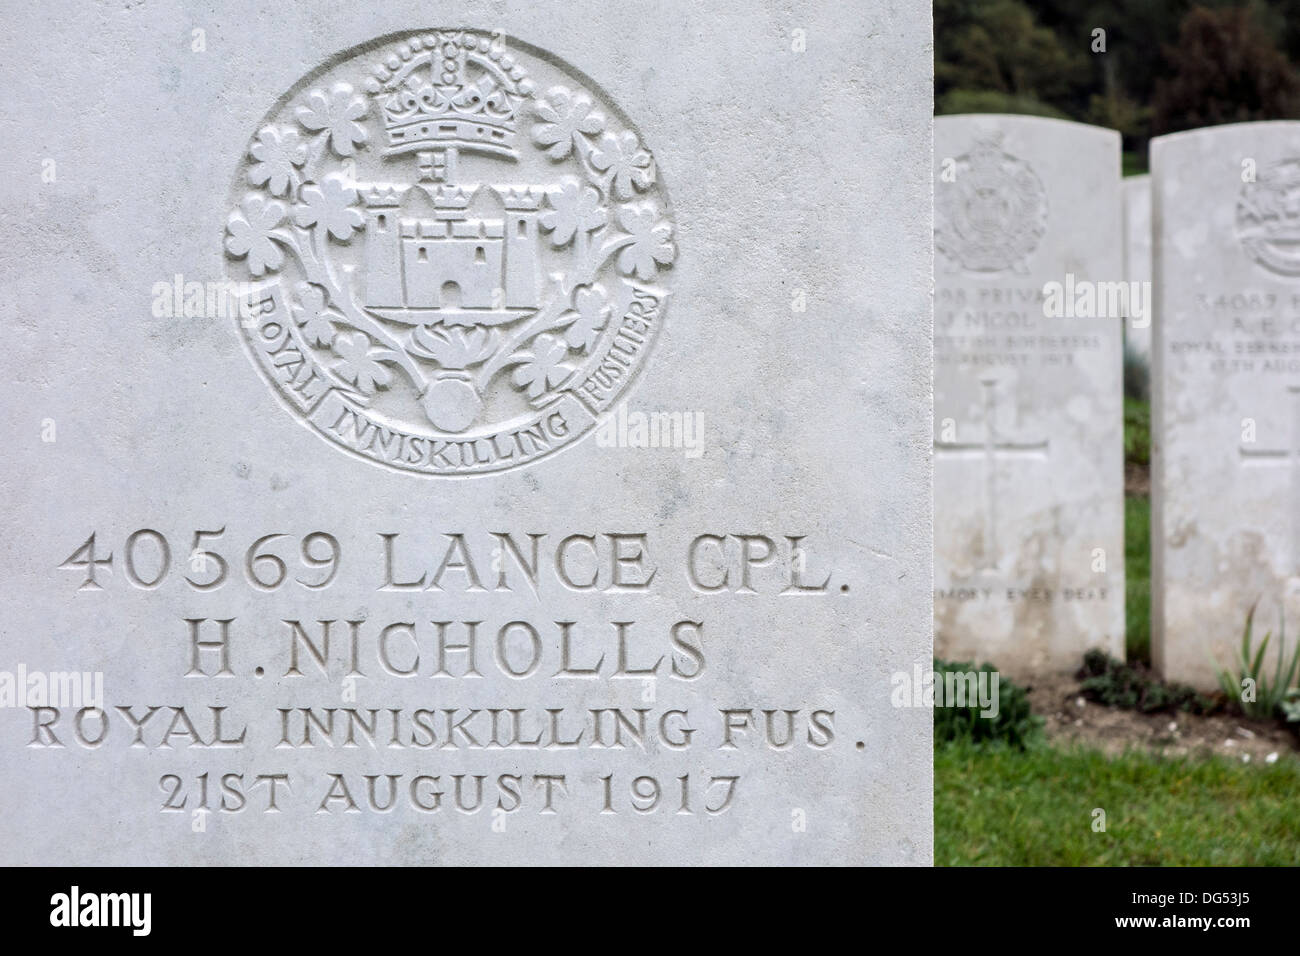 Royal Inniskilling Fusiliers regimental badge sulla tomba di WWI soldato britannico, cimitero della Commissione delle tombe di guerra del Commonwealth Foto Stock